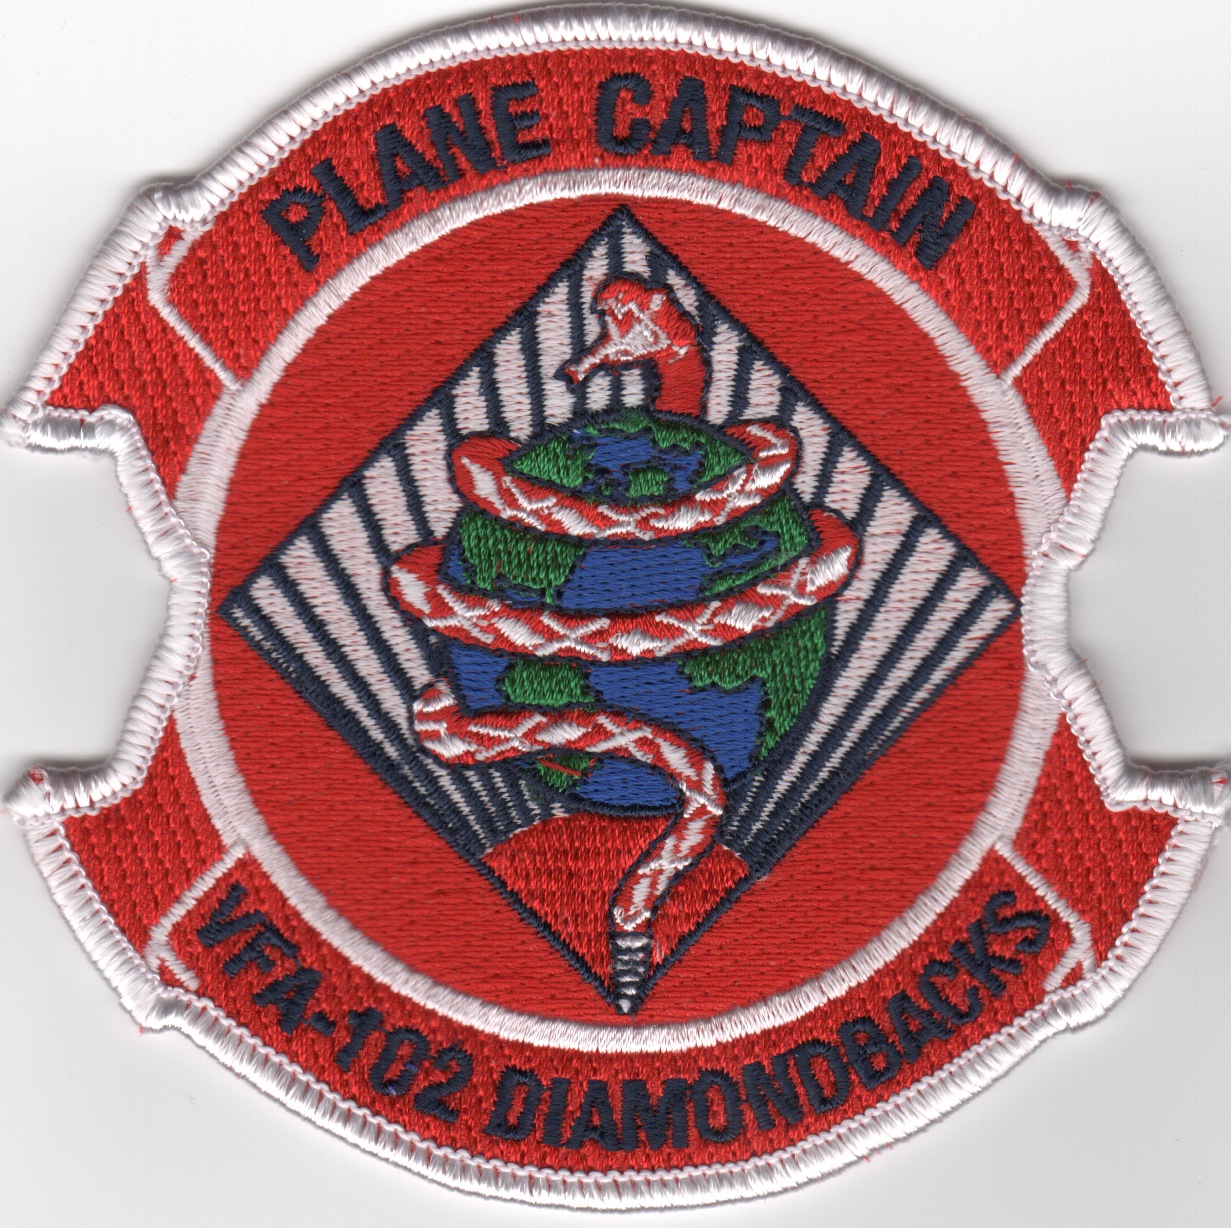 VFA-102 'Plane Captain' Patch